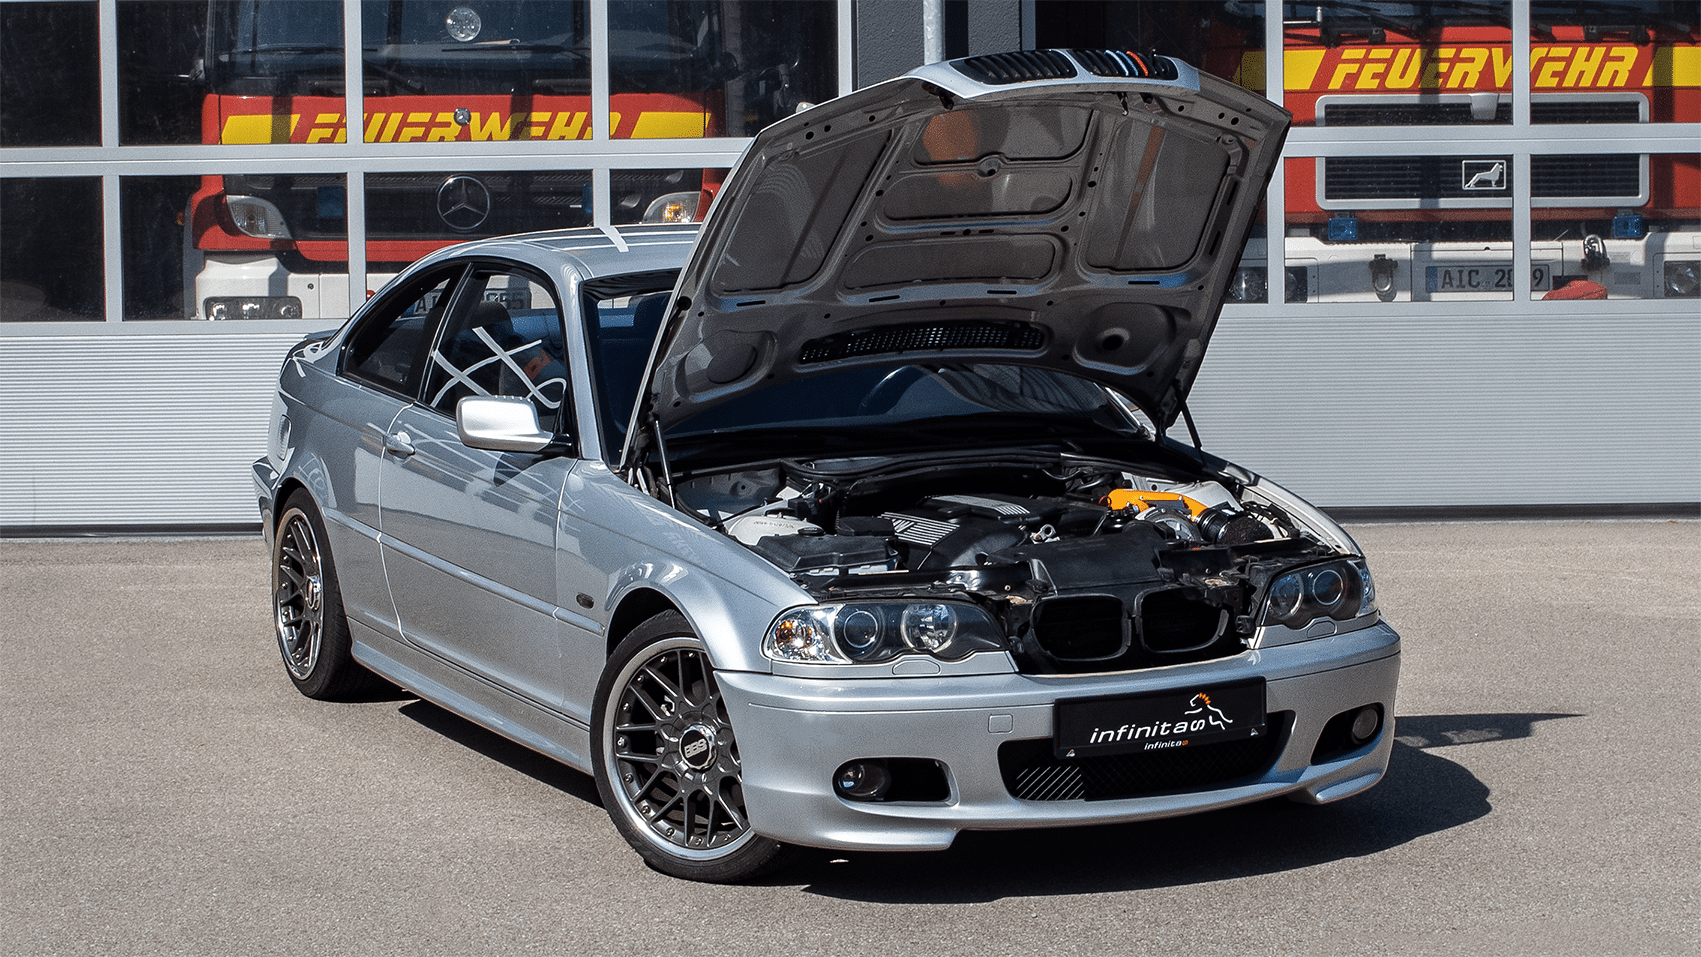 BMW E46 Tuner - infinitas - Impressive performance in the E46